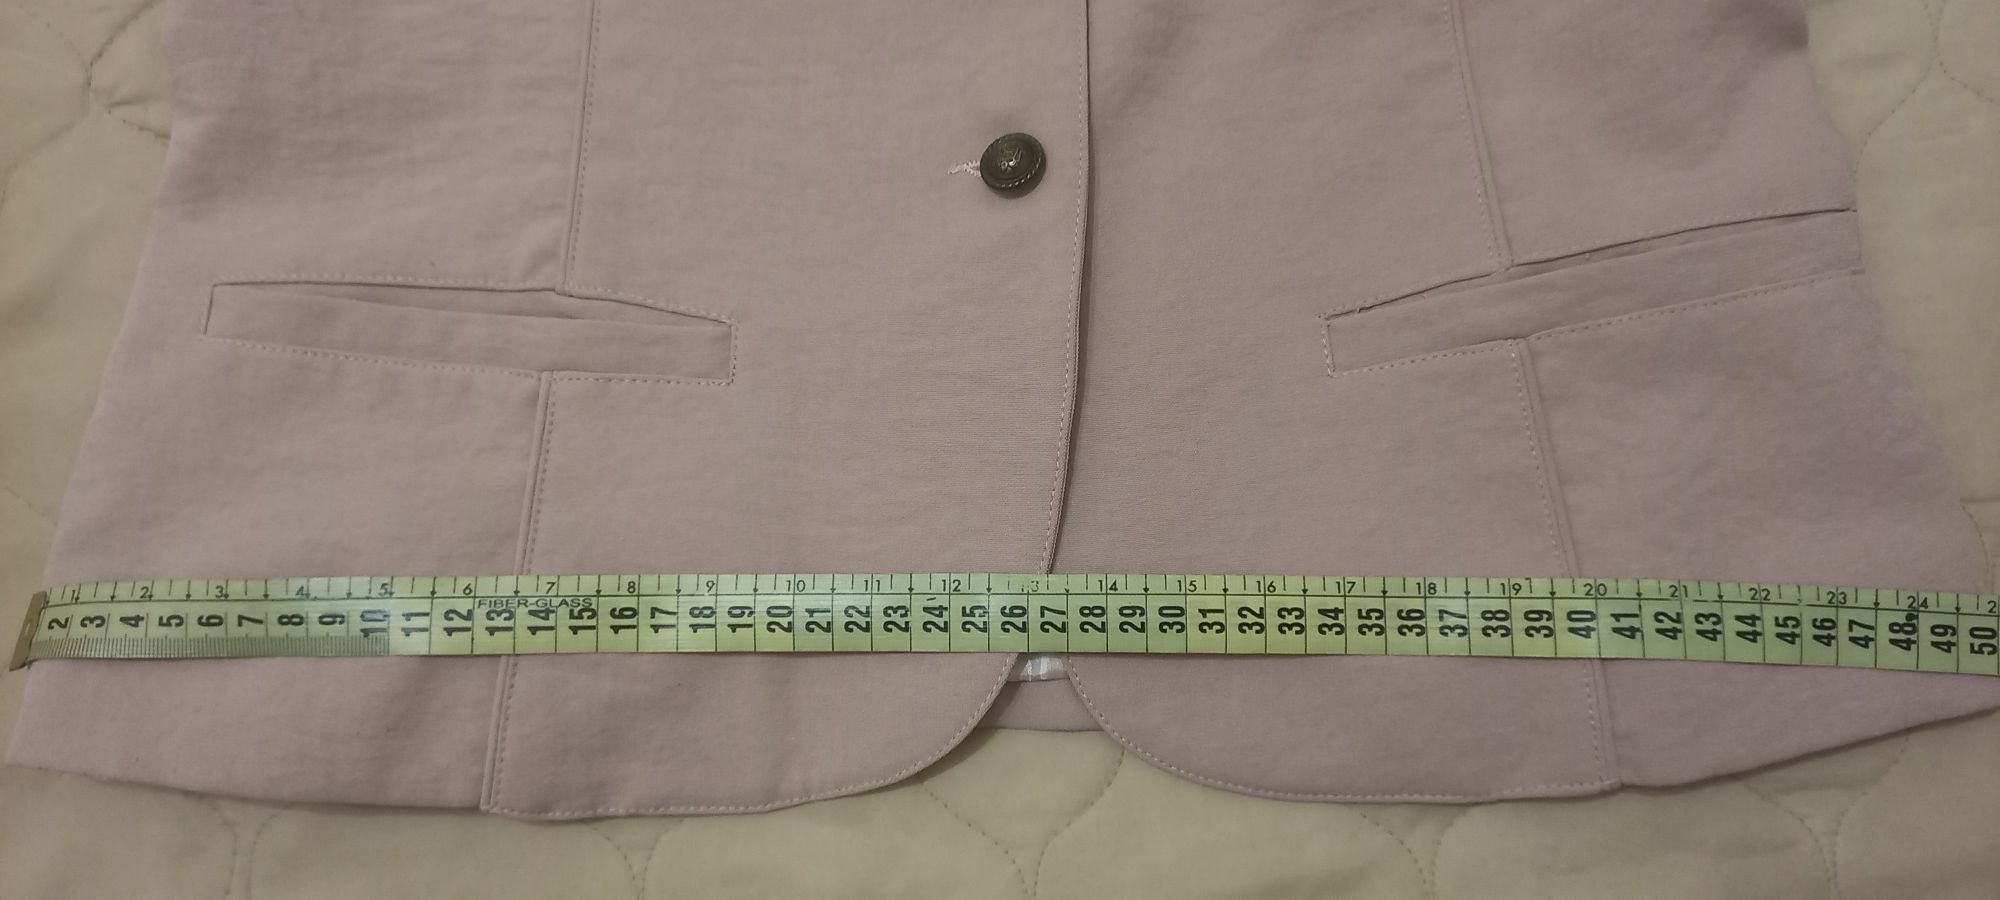 Комплект двойка (блузка и пиджак) с замерами.